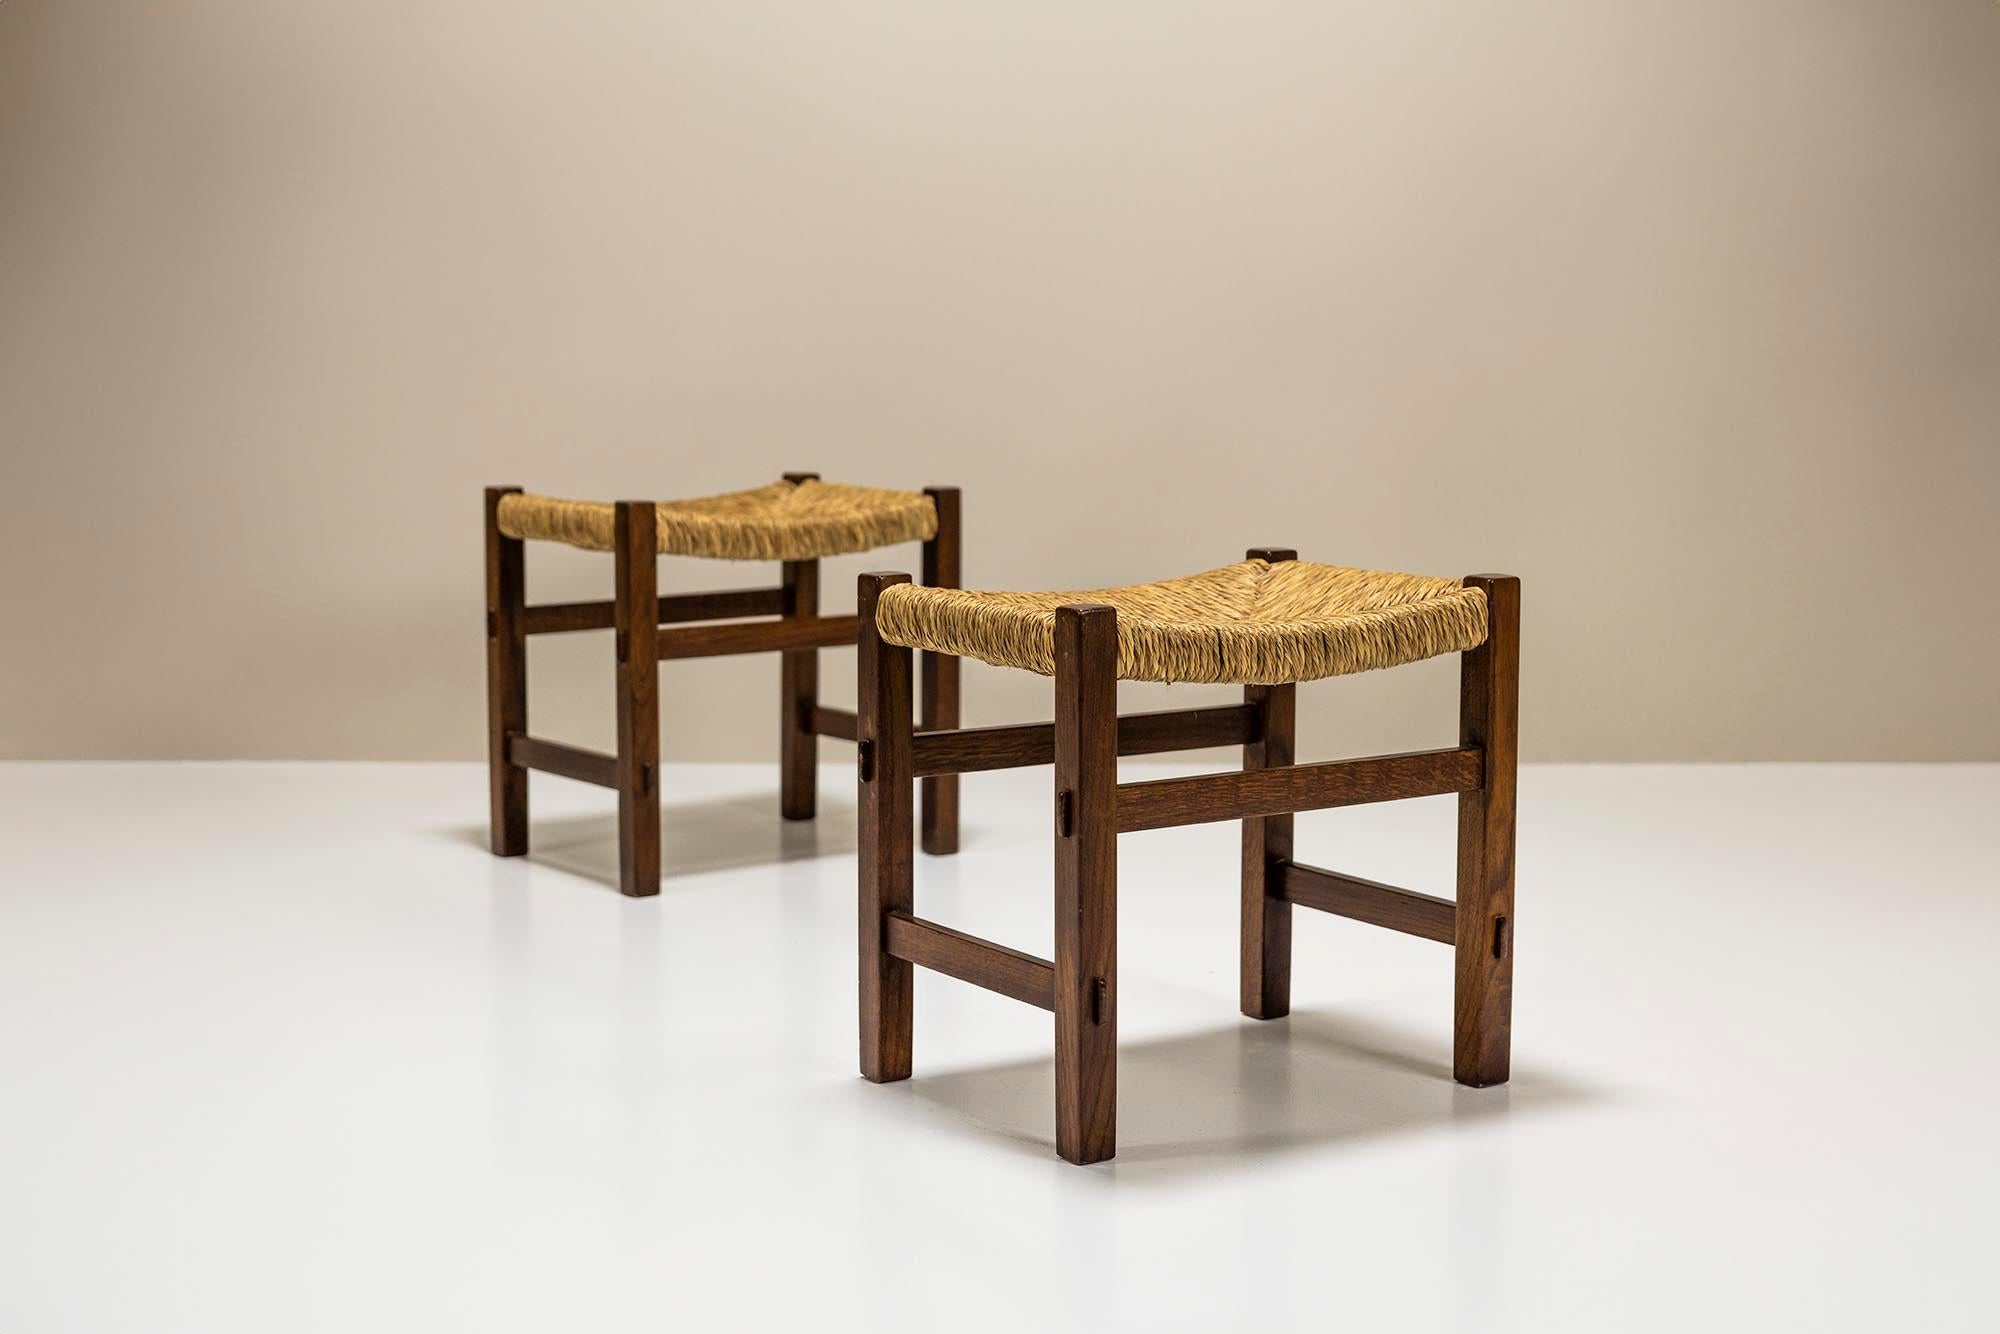 Neben den beeindruckenden und sehr komplexen Möbeln aus dem Werk des italienischen Möbelbauers Giuseppe Rivadossi gibt es auch eine Reihe eher traditioneller Werke. Darunter auch diese beiden klassischen Hocker im rustikalen Stil.

Design/One
Der